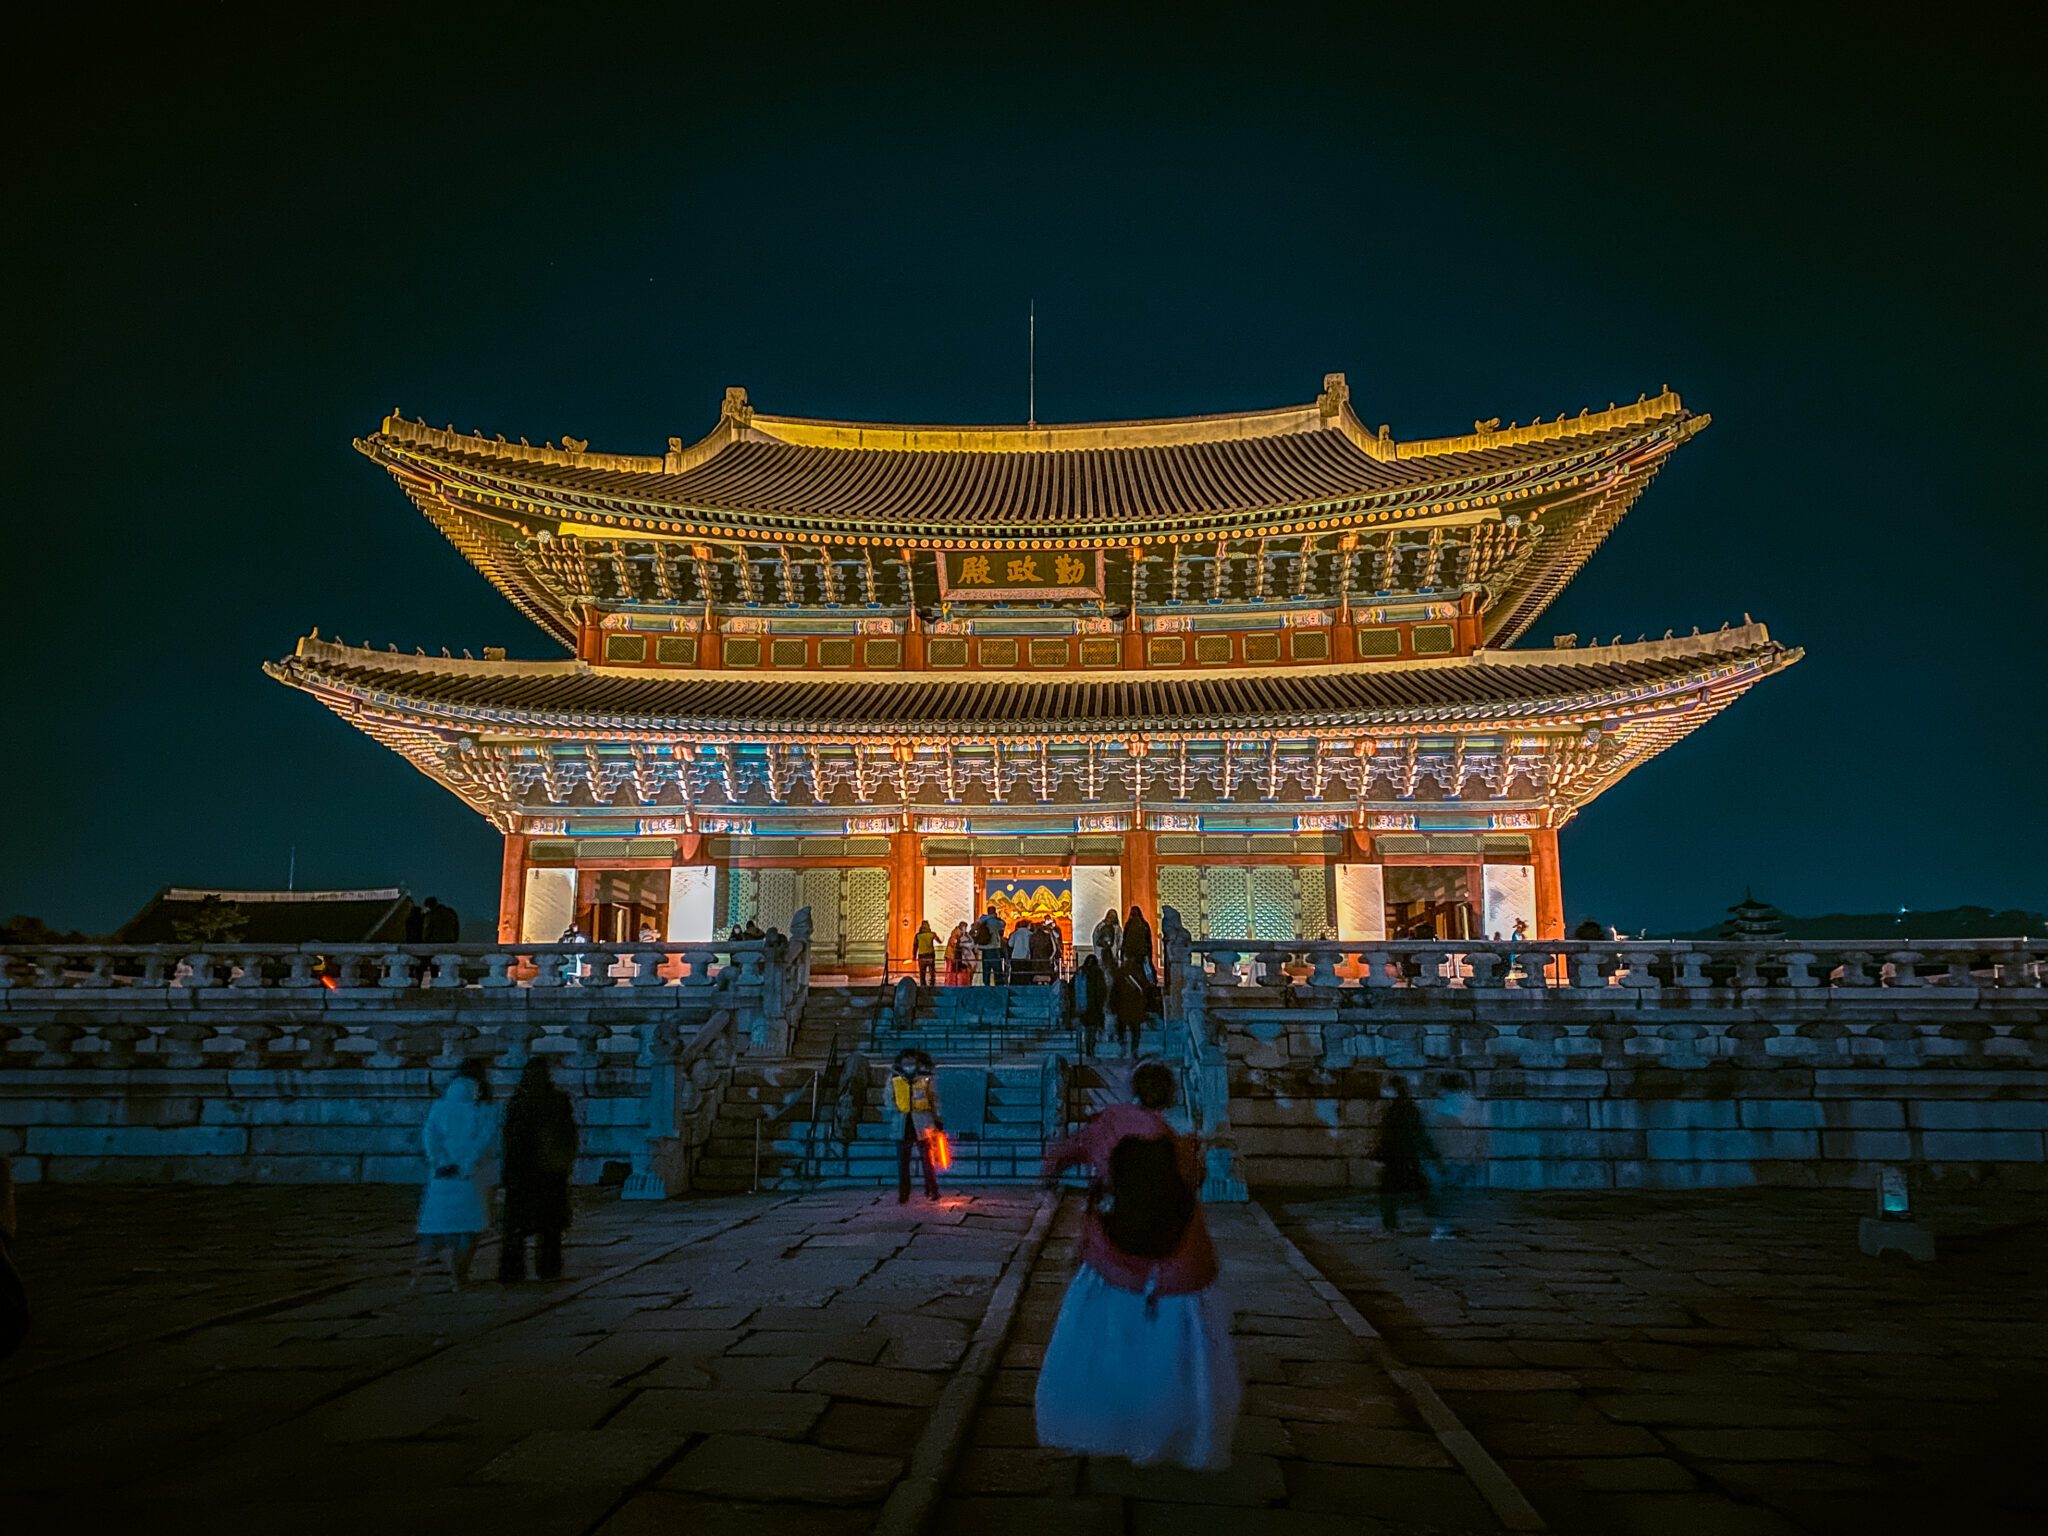 gyeongbokgung palace at night